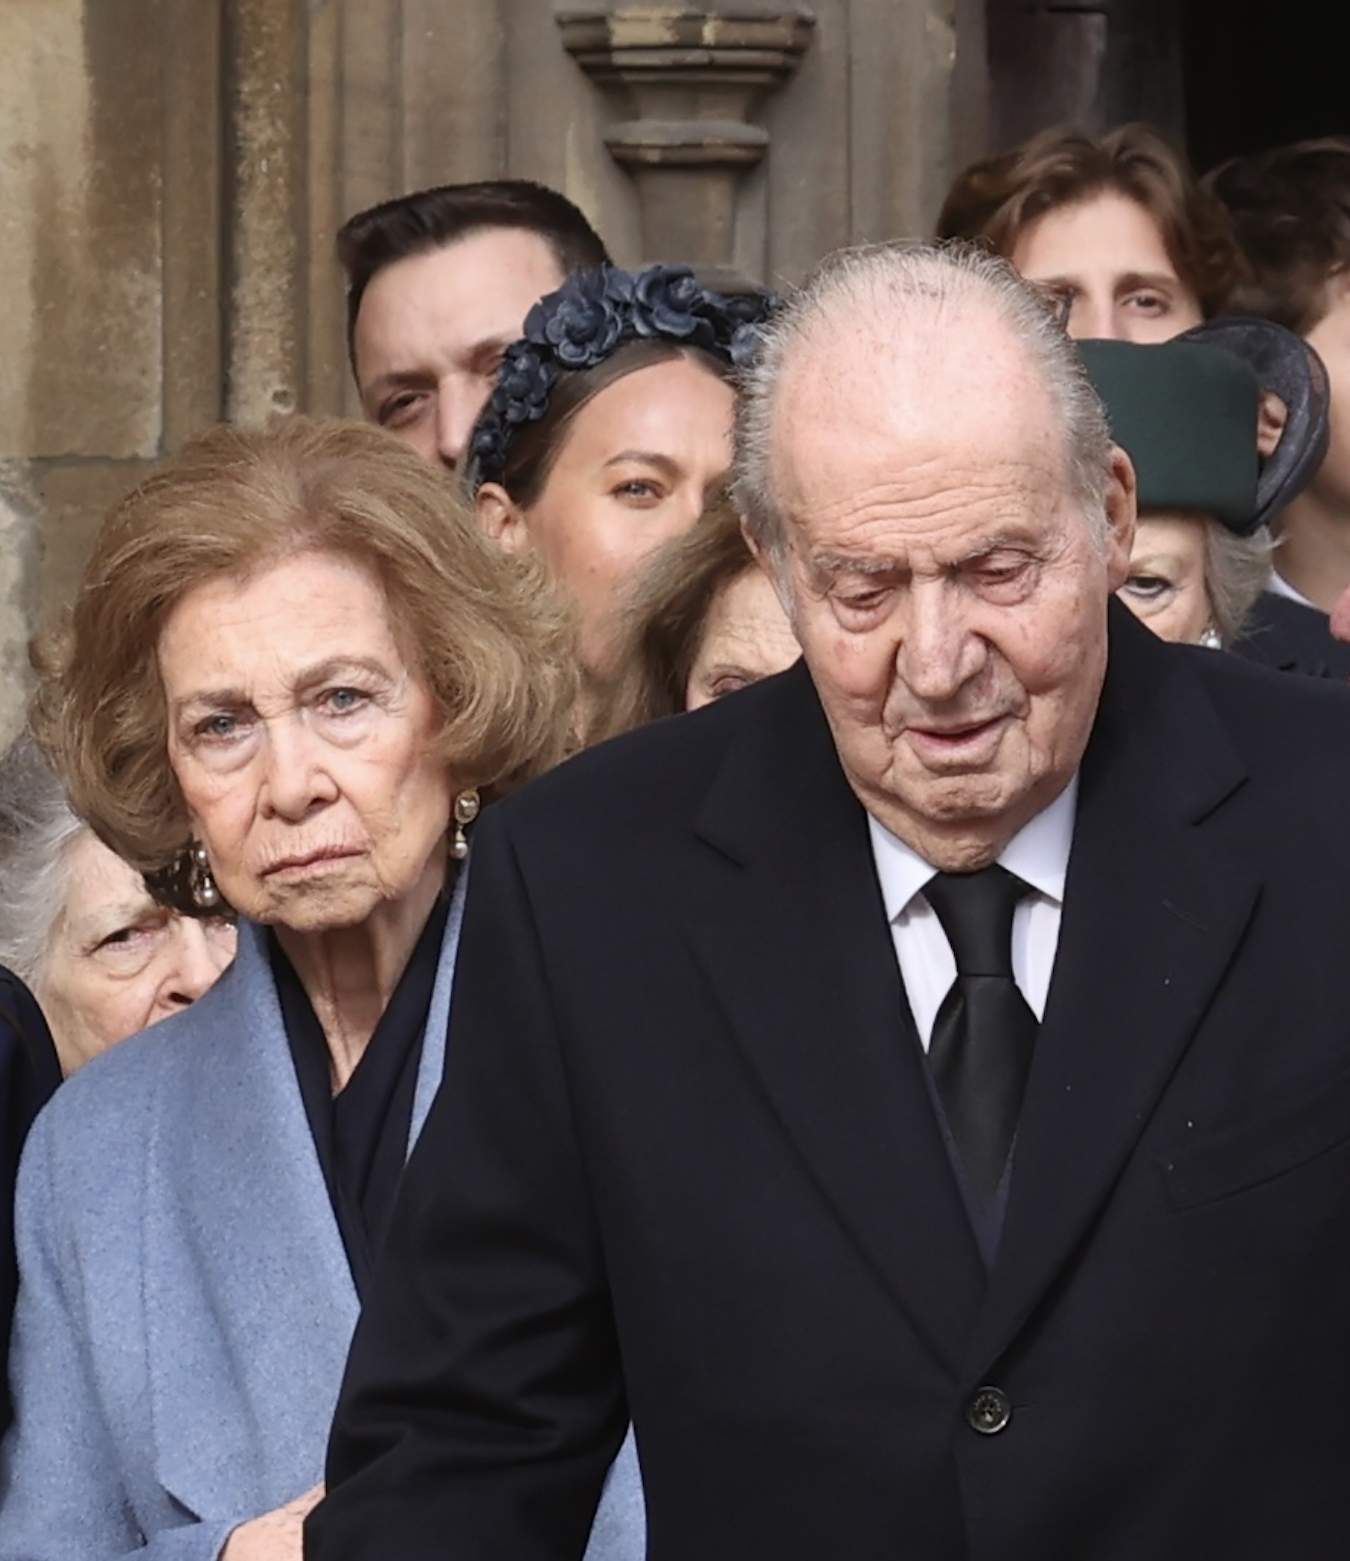 Sofia horroritzada amb Joan Carles i els seus escortes, extrema crueltat